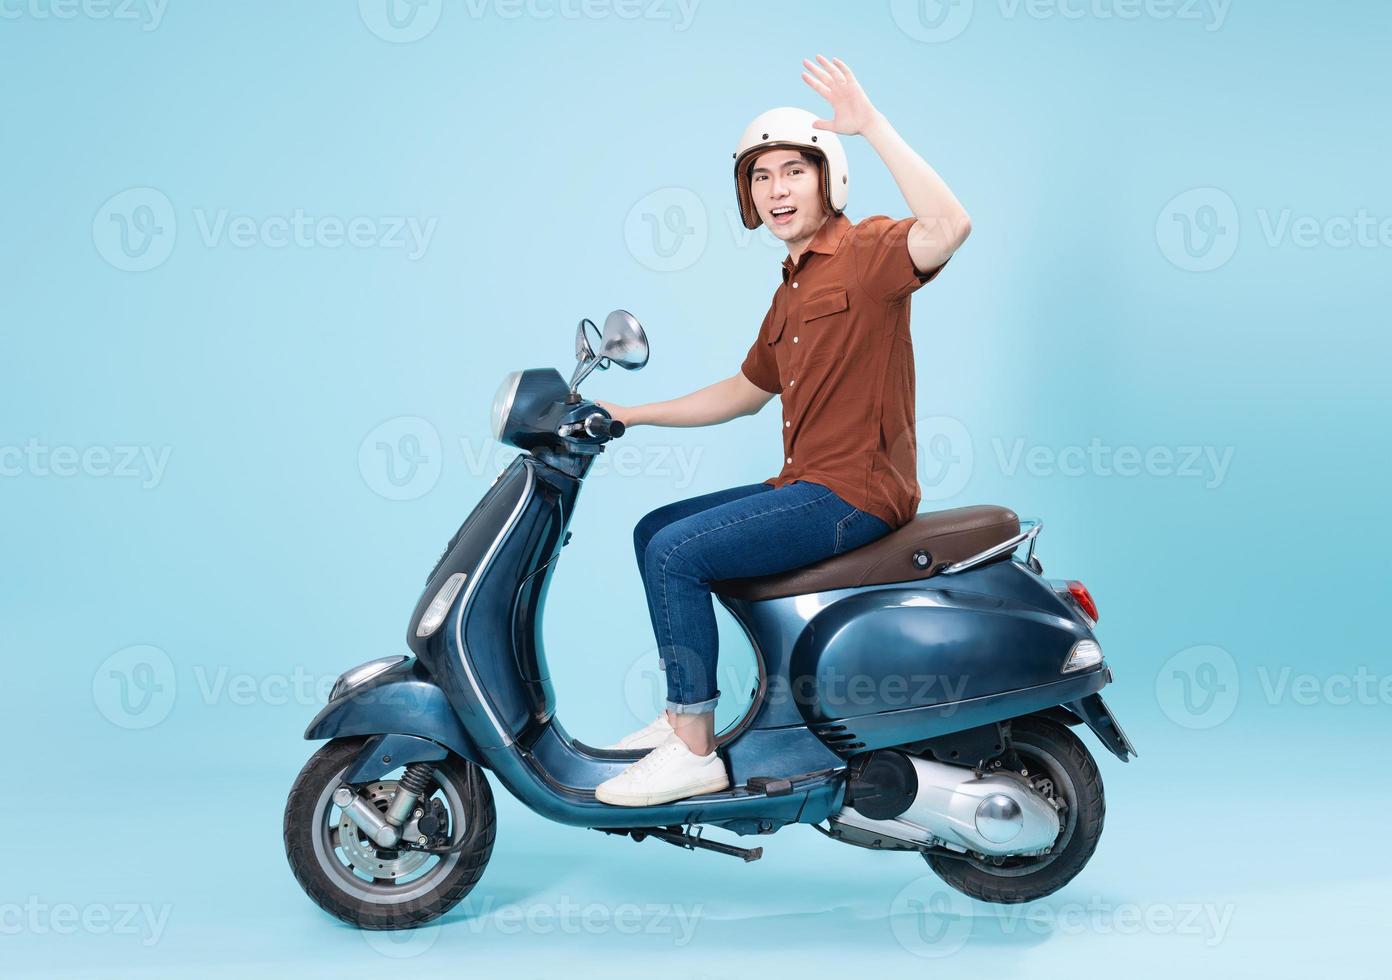 imagen de joven asiático hombre en moto foto